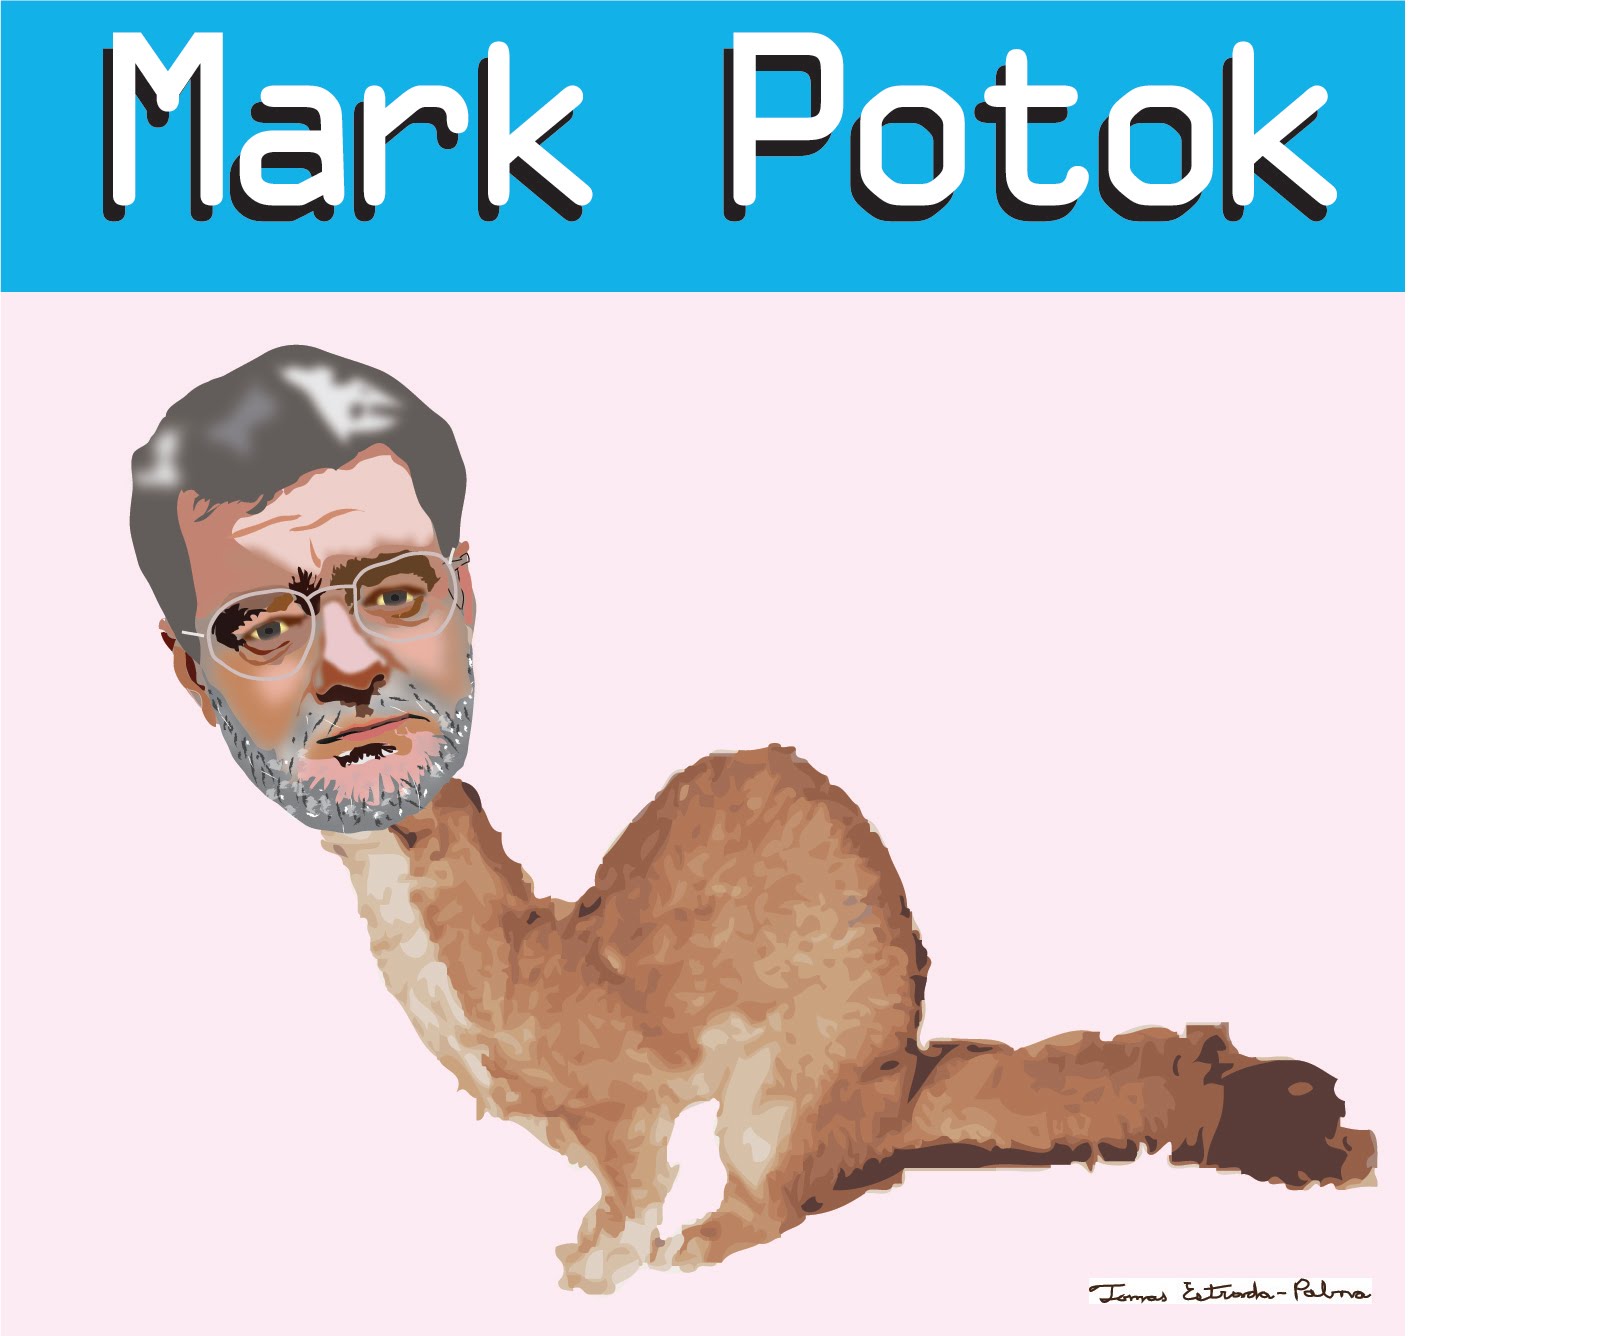 Today's Tomás Estrada-Palma Message: Mark Potok